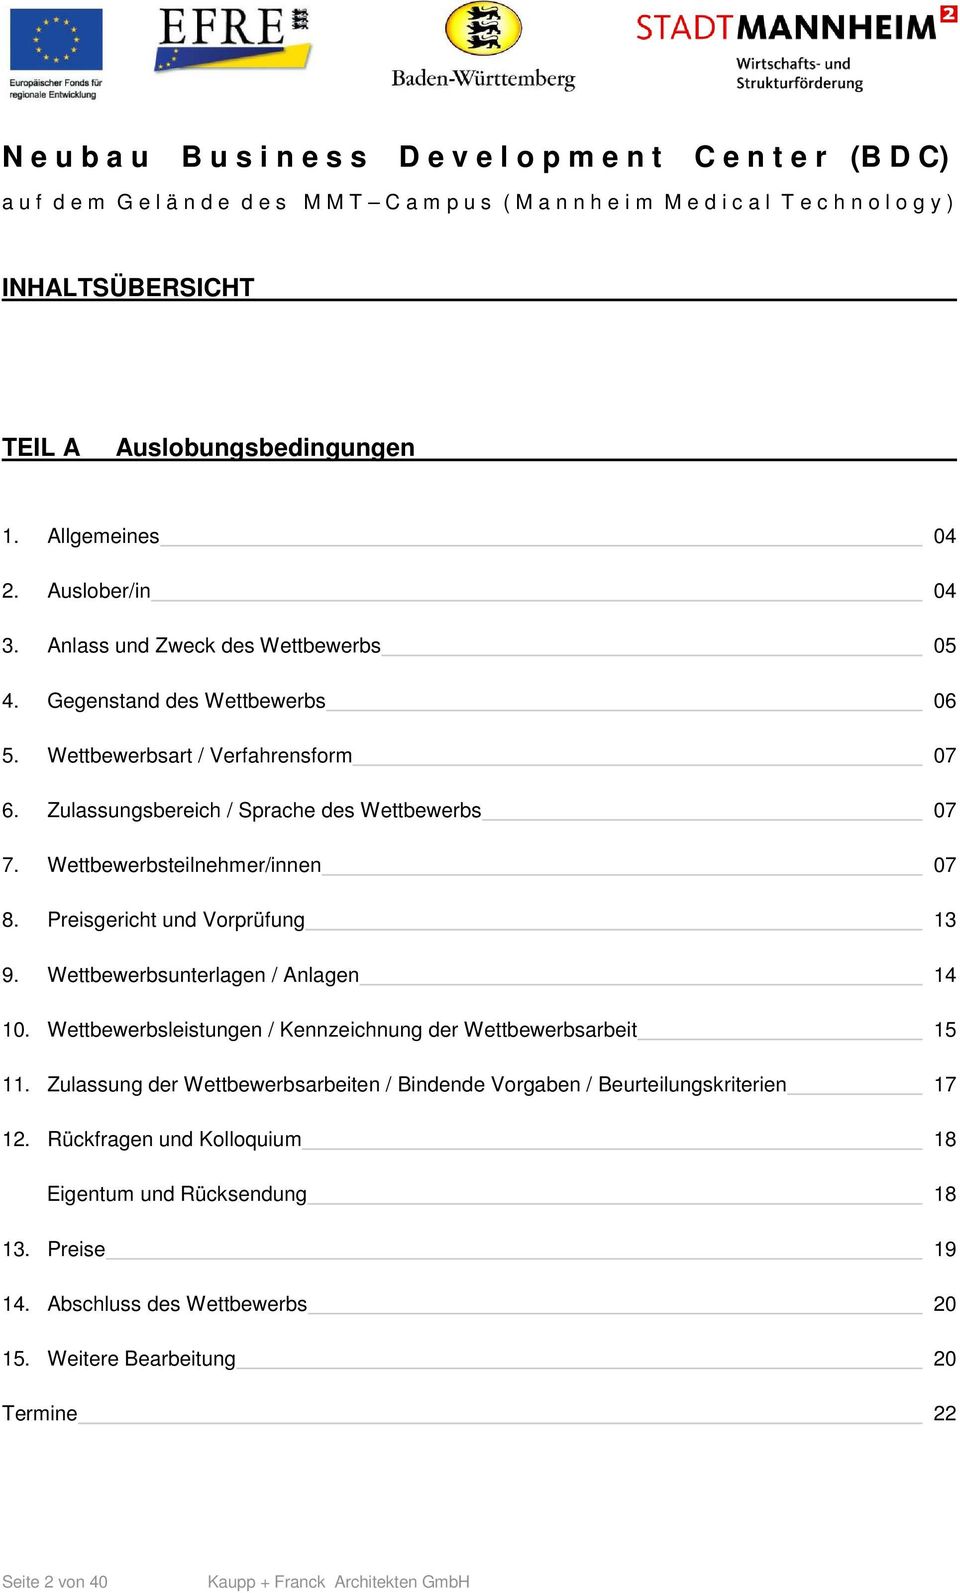 Wettbewerbsunterlagen / Anlagen 14 10. Wettbewerbsleistungen / Kennzeichnung der Wettbewerbsarbeit 15 11.